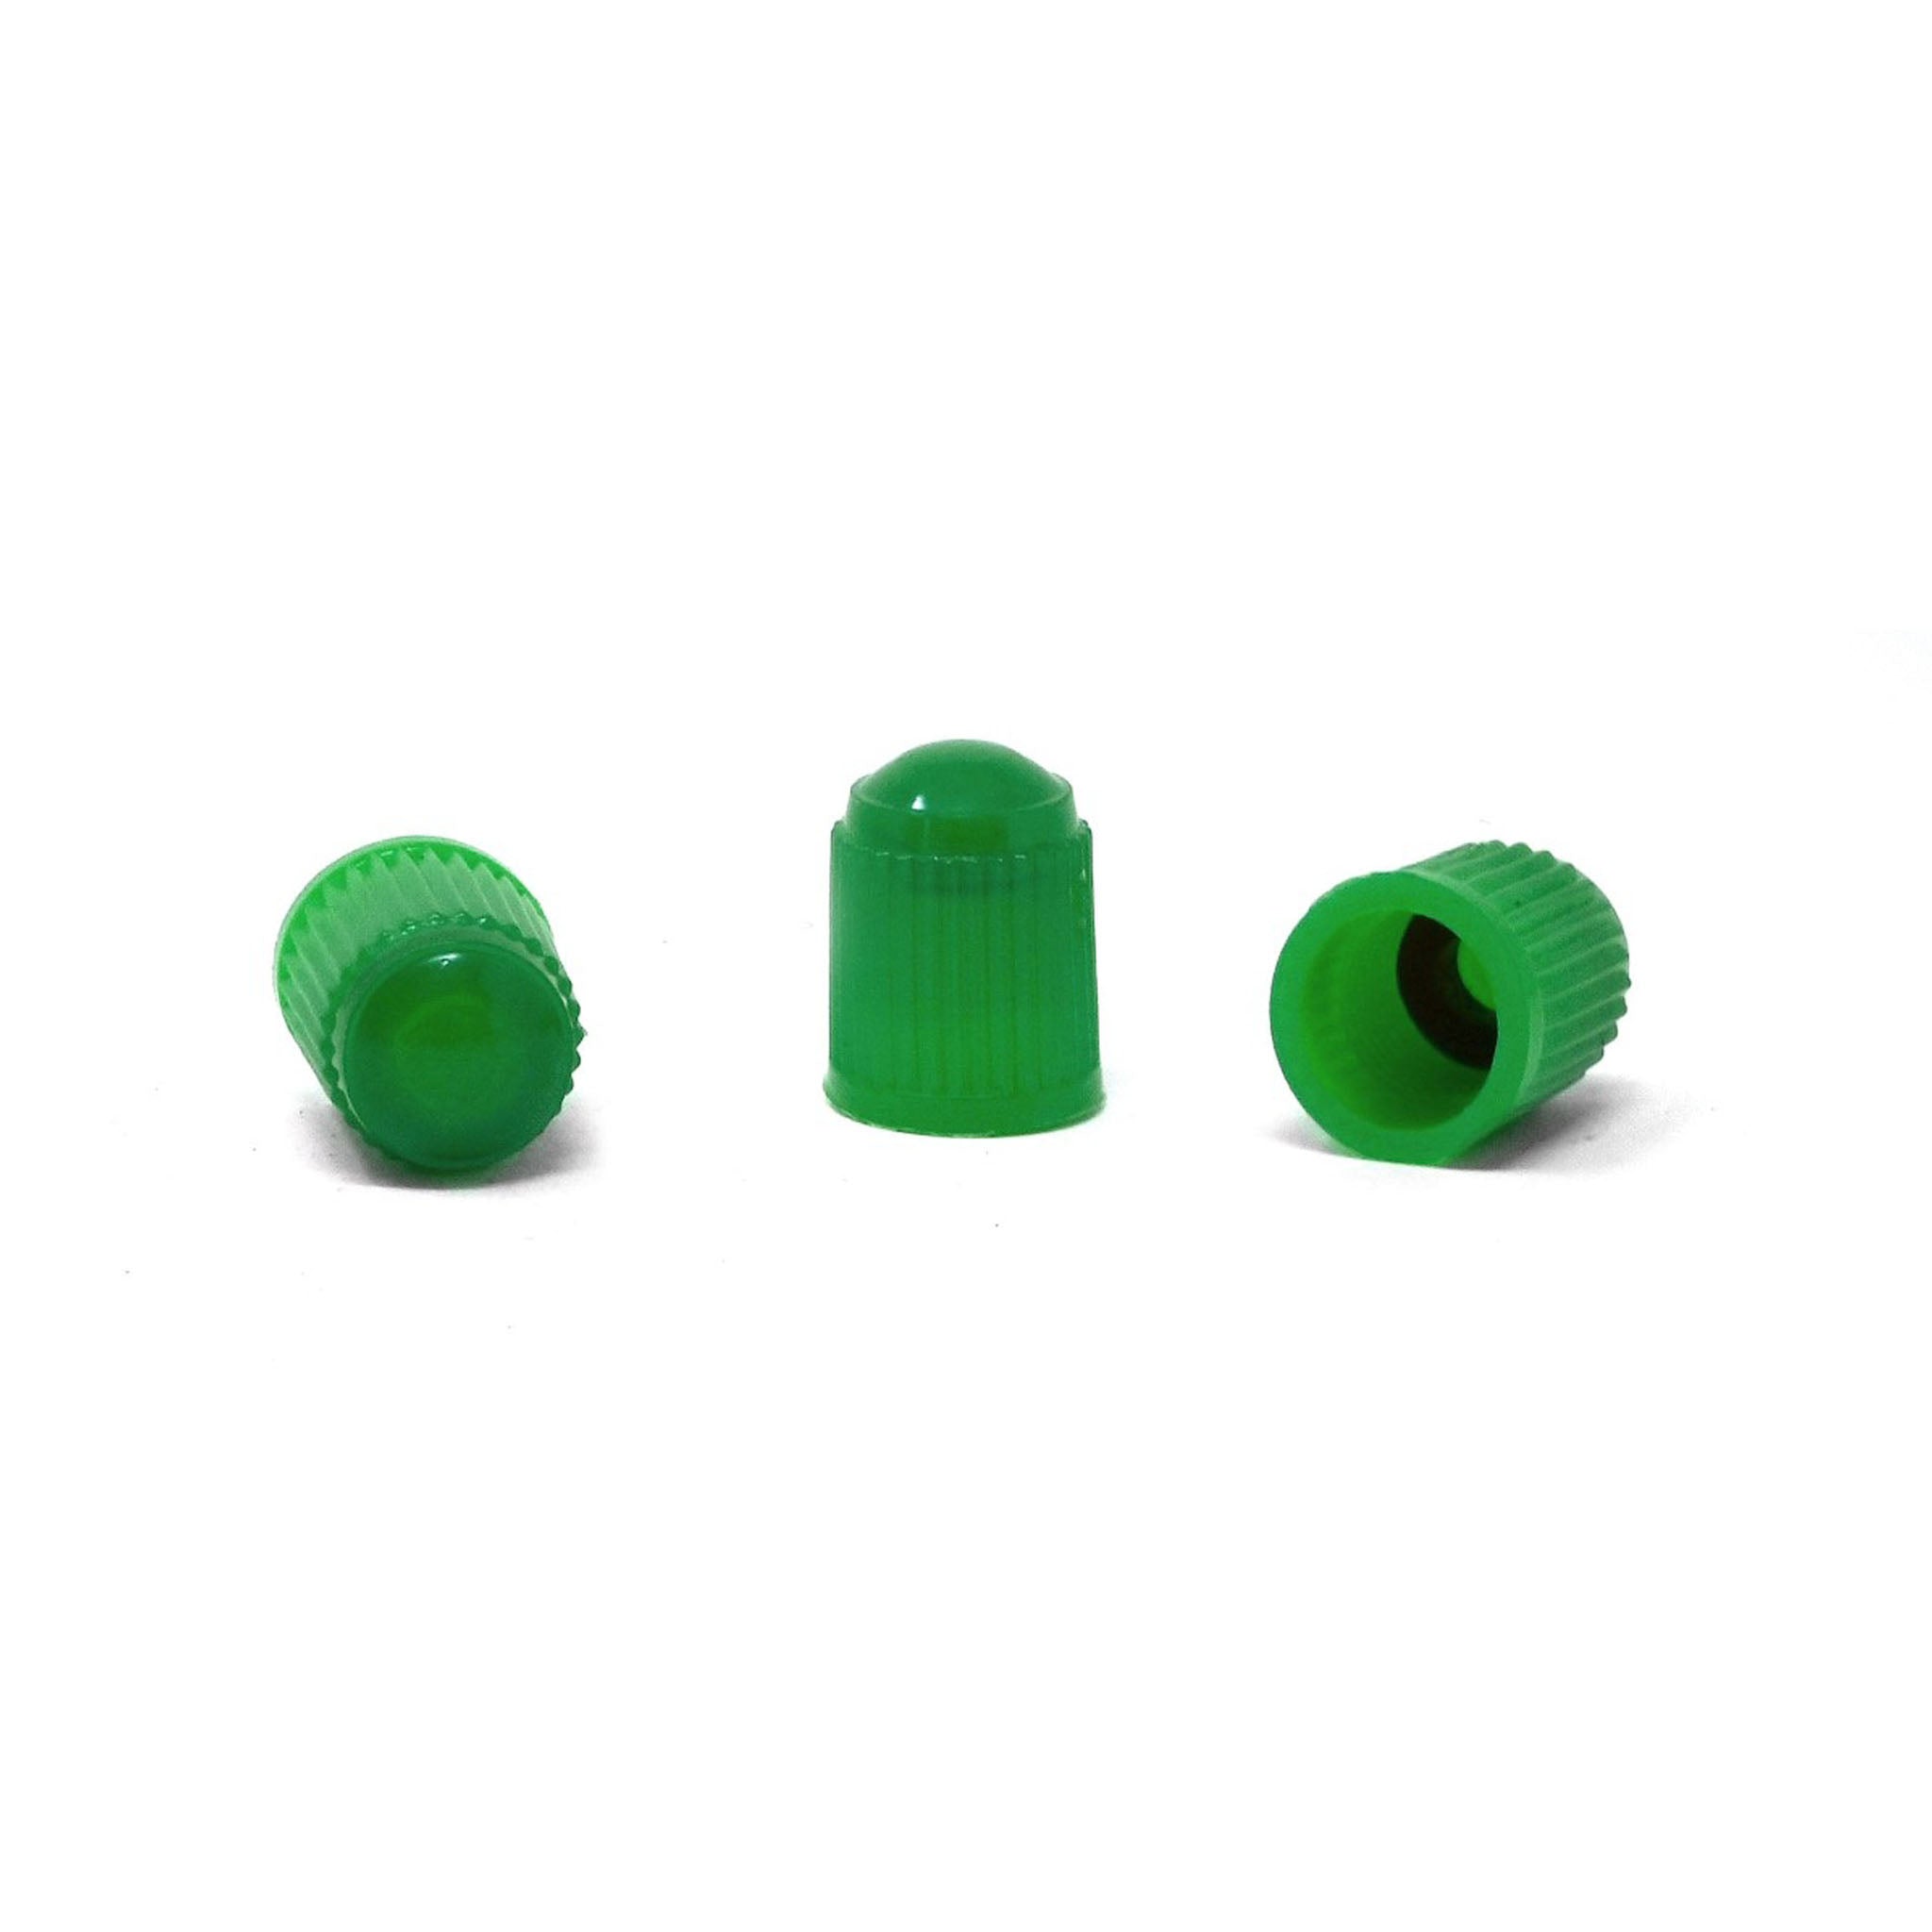 4 Plastic Grommets -5/8 Hole (500 sets)